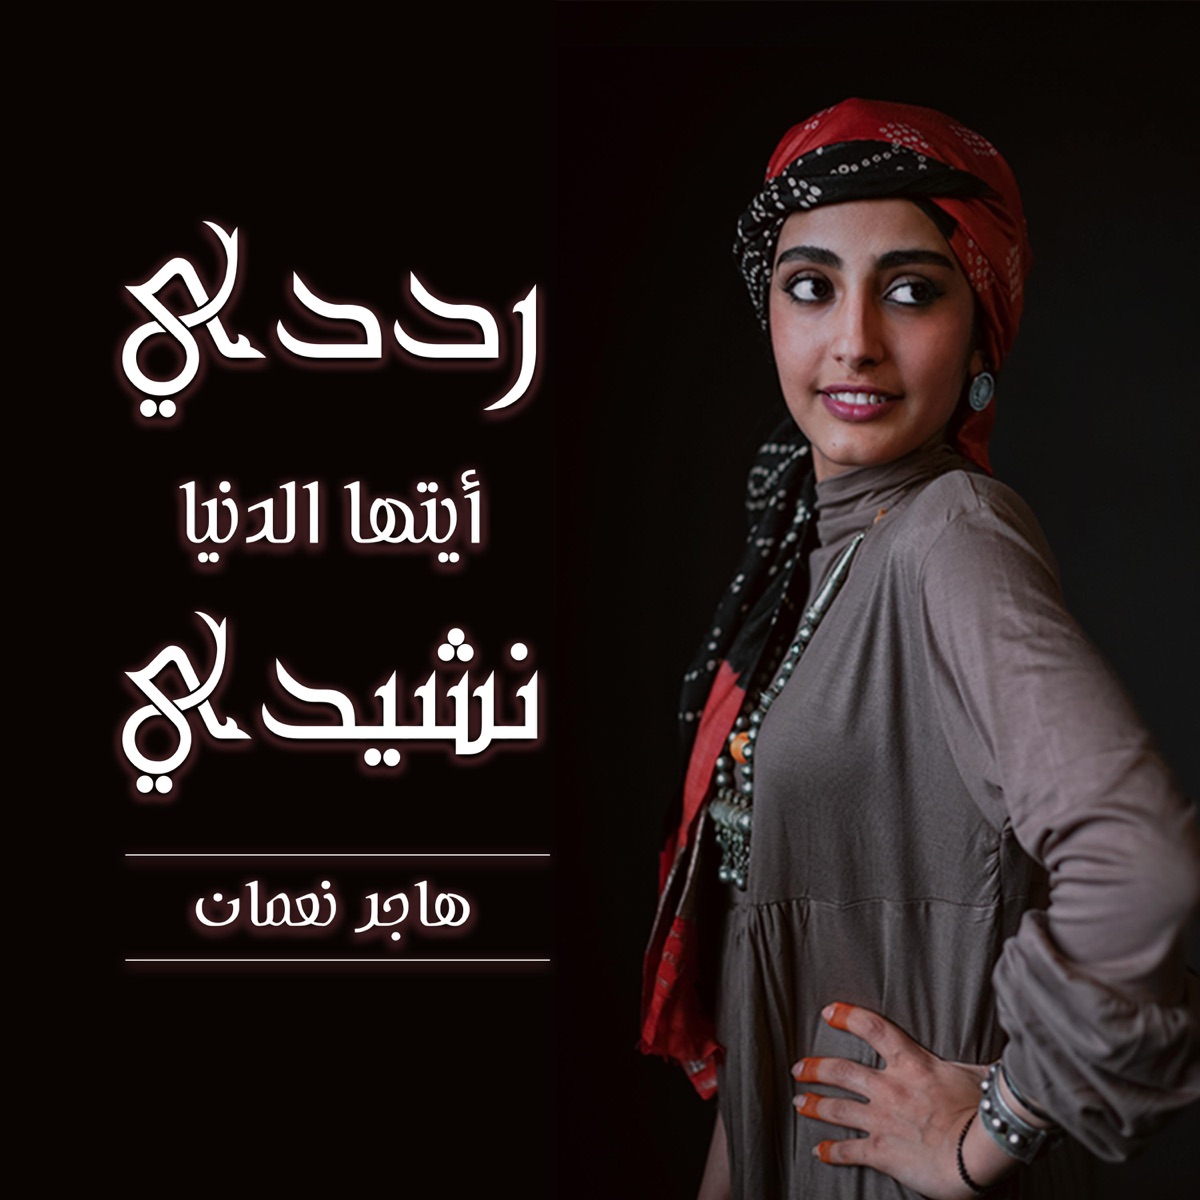 حسنك لعب بالعقول - هاجر نعمان - Single by Hajar Noman on Apple Music